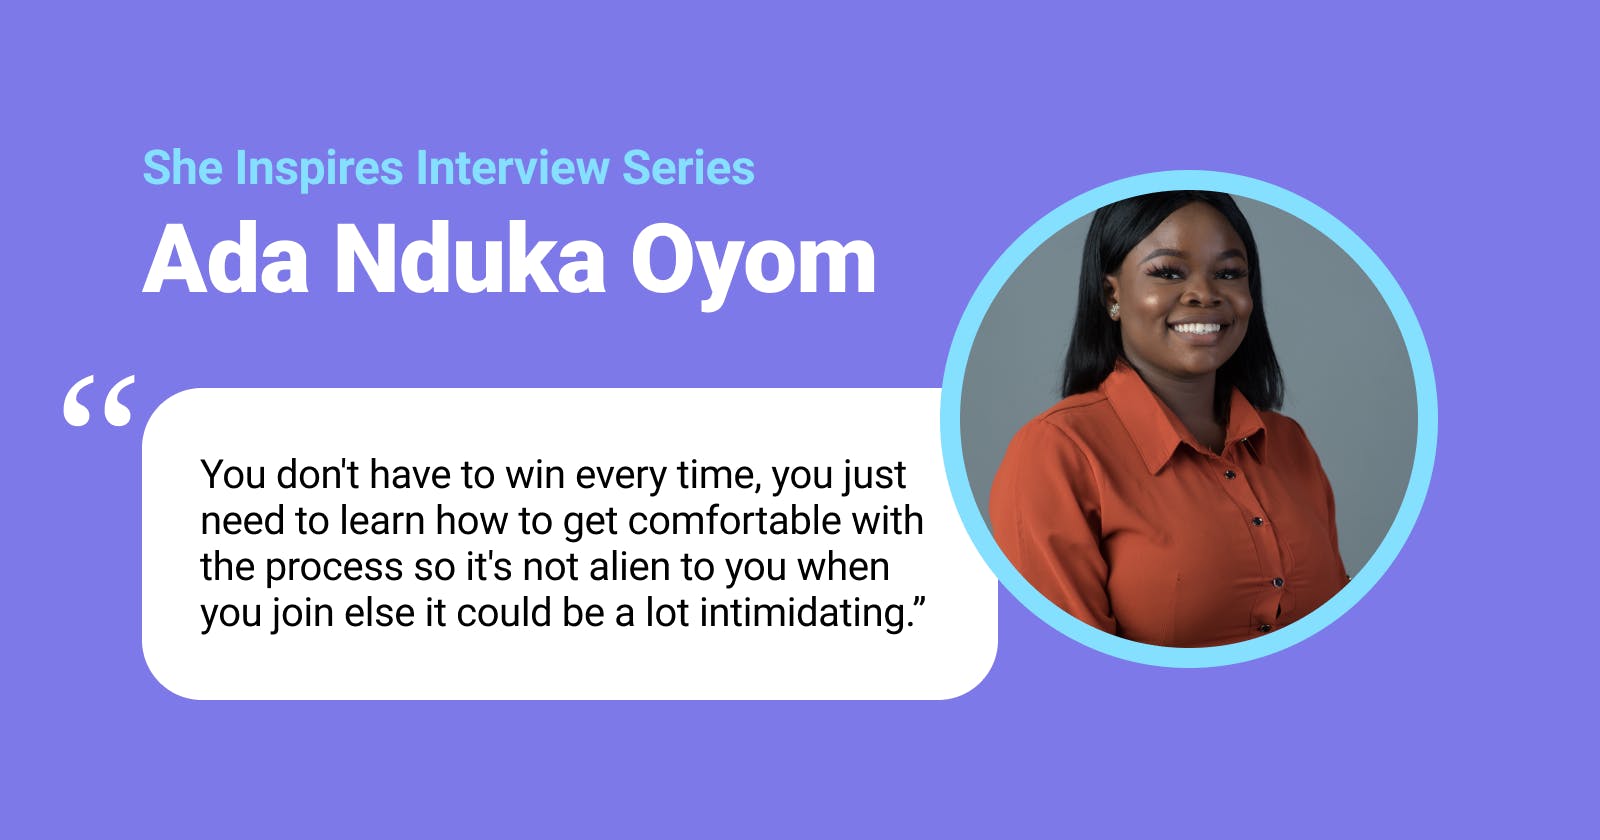 Women in Tech: Ada Nduka Oyom